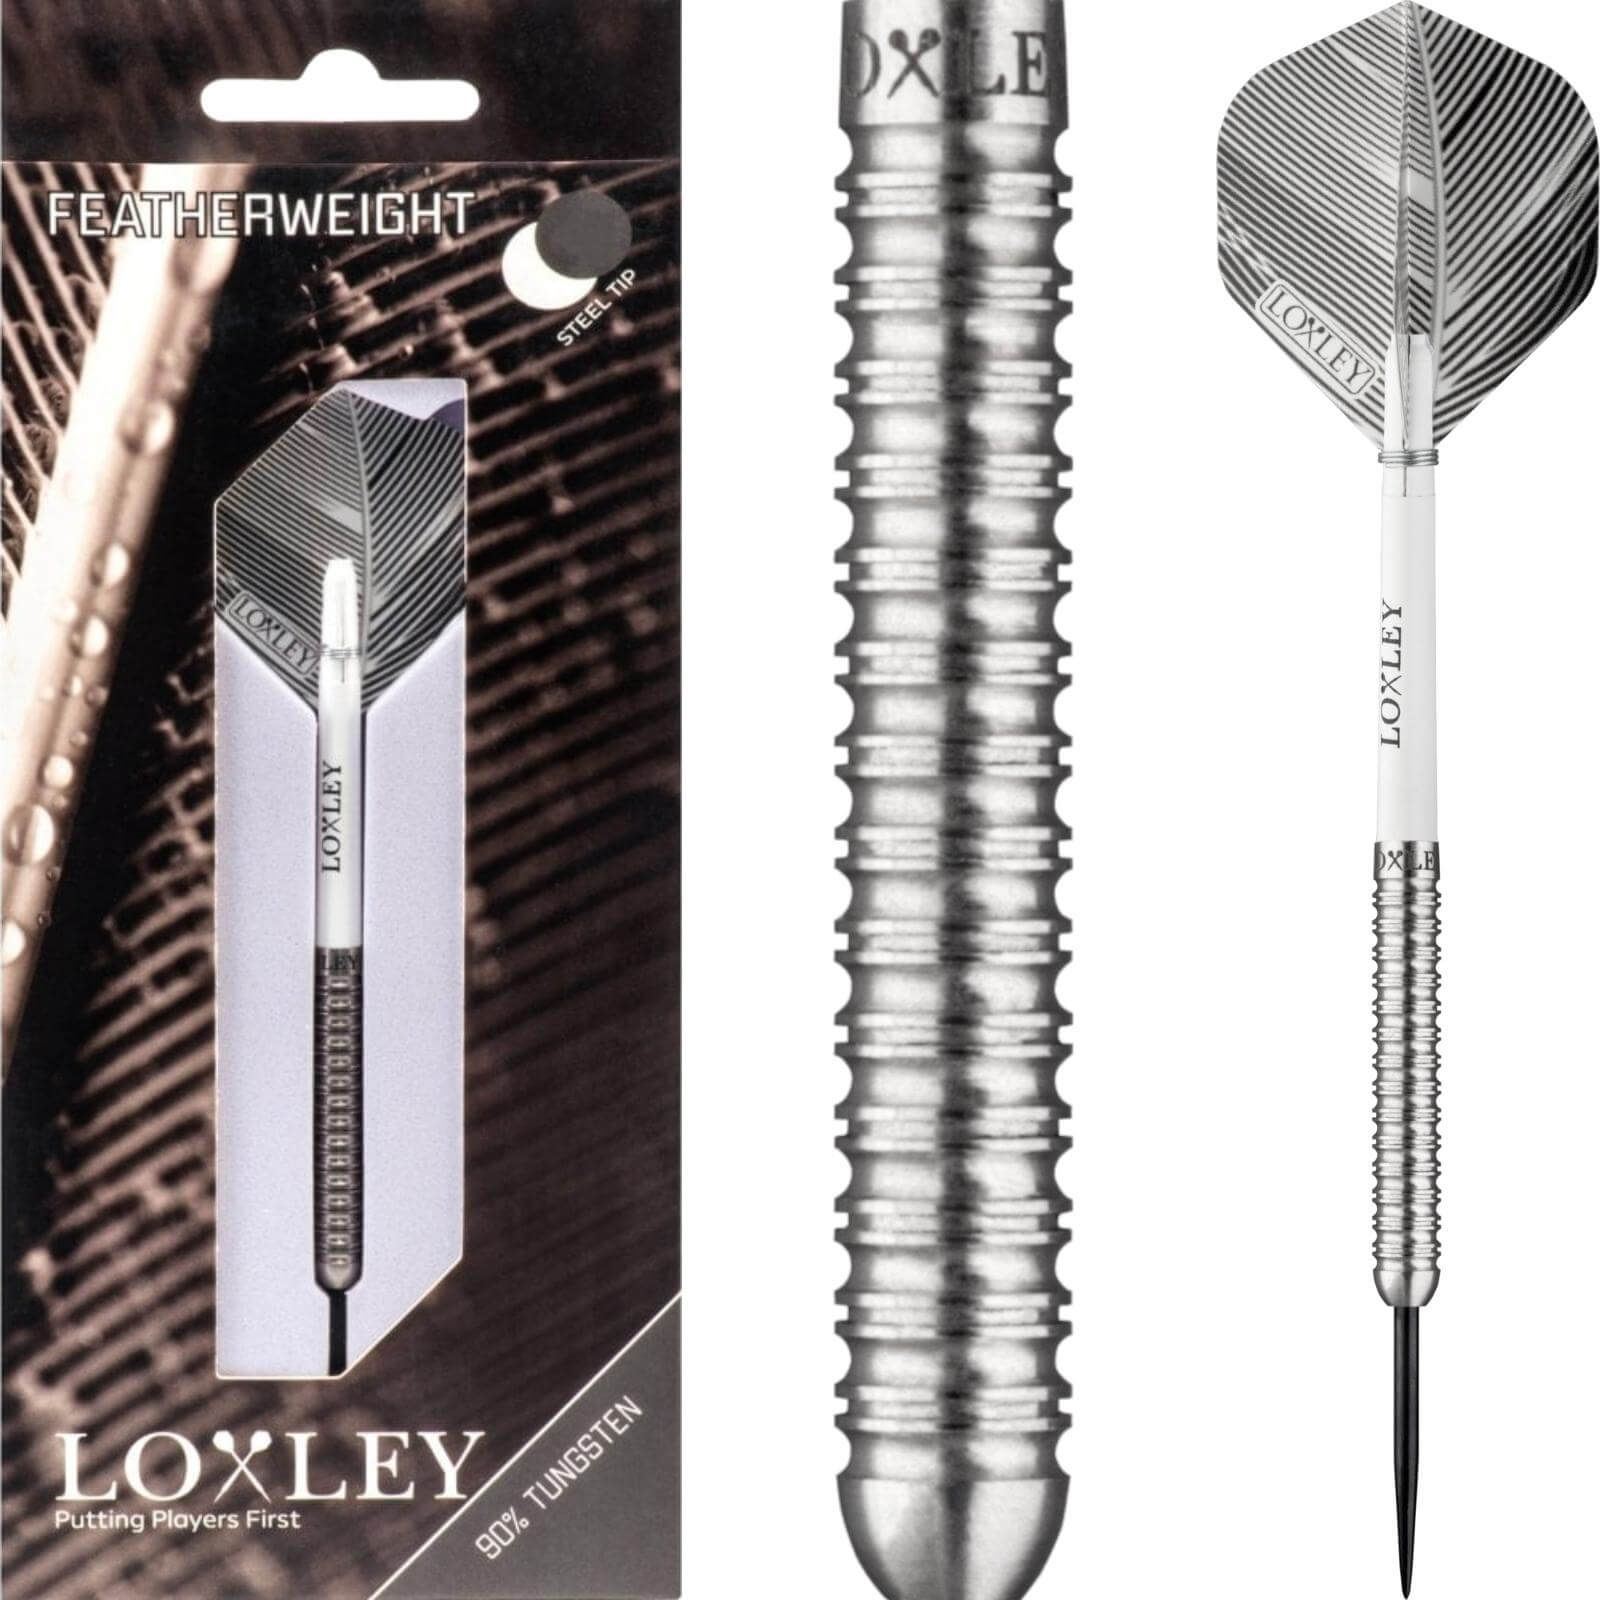 Darts - Loxley - Featherweight Darts - Steel Tip - 90% Tungsten - 16g 